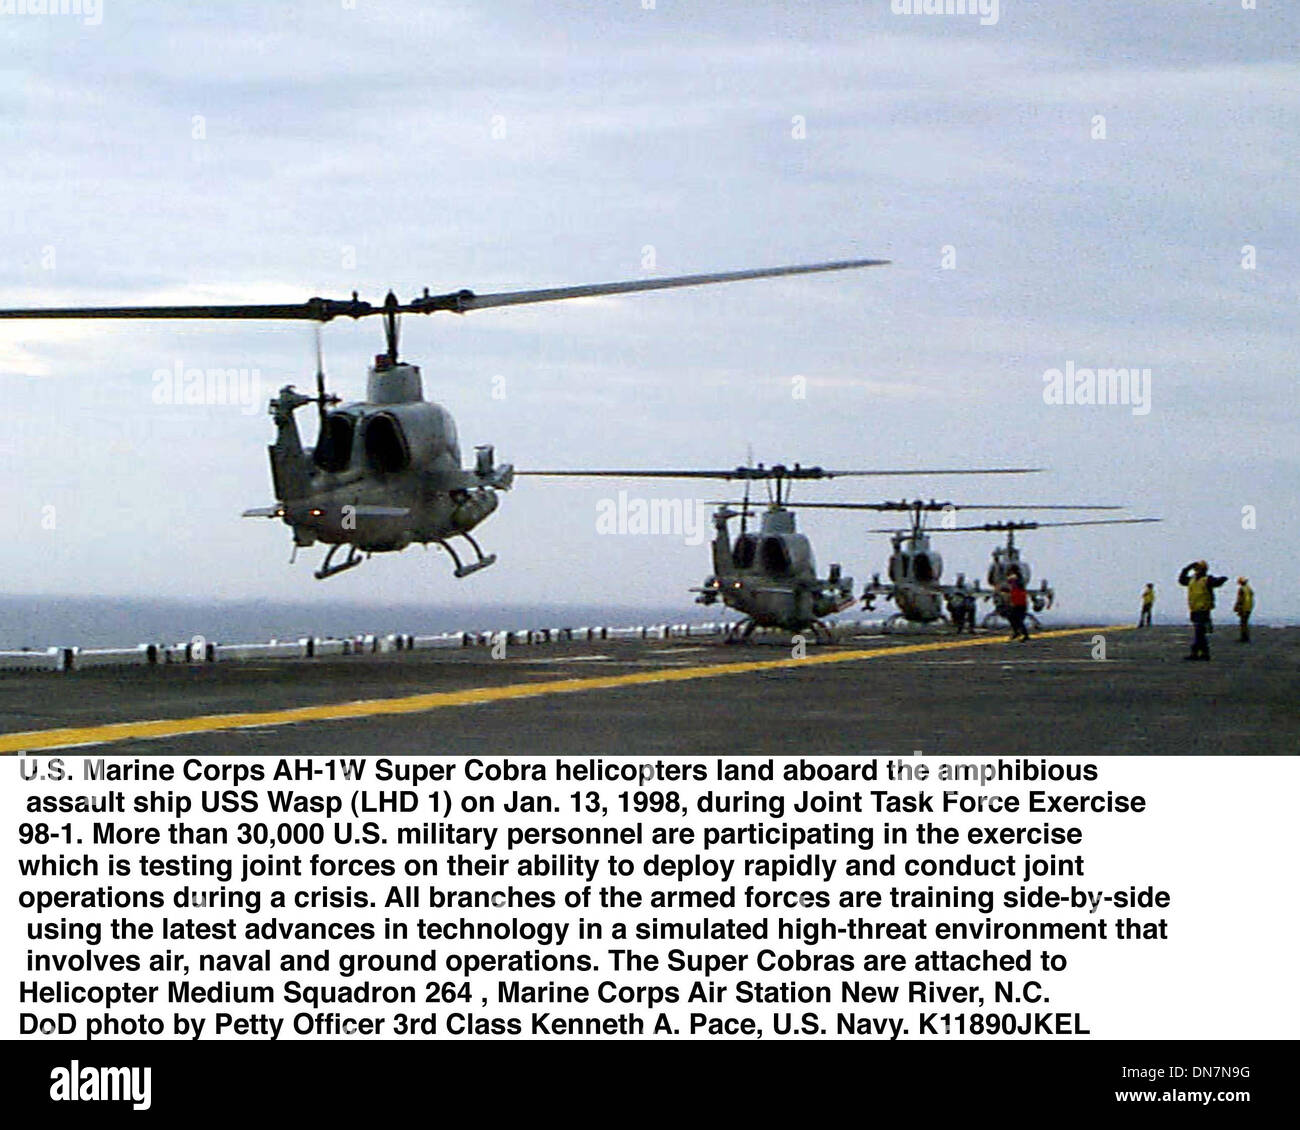 1. Januar 1998 - Uss Wasp (Lhd 1 - 980113-N-4319 P-007... US Marine Corps AH-1W Super Cobra Hubschrauber Land auf amphibischer Angriff Schiff USS Wasp (LHD-1) am 13. Januar 1998, während der Joint Task Force Übung 98-1.  Mehr als 30.000 US-Militärpersonal beteiligen der Übung sich die gemeinsamen Kräfte auf ihre Fähigkeit, schnell bereitstellen und gemeinsame Operationen getestet wird Stockfoto